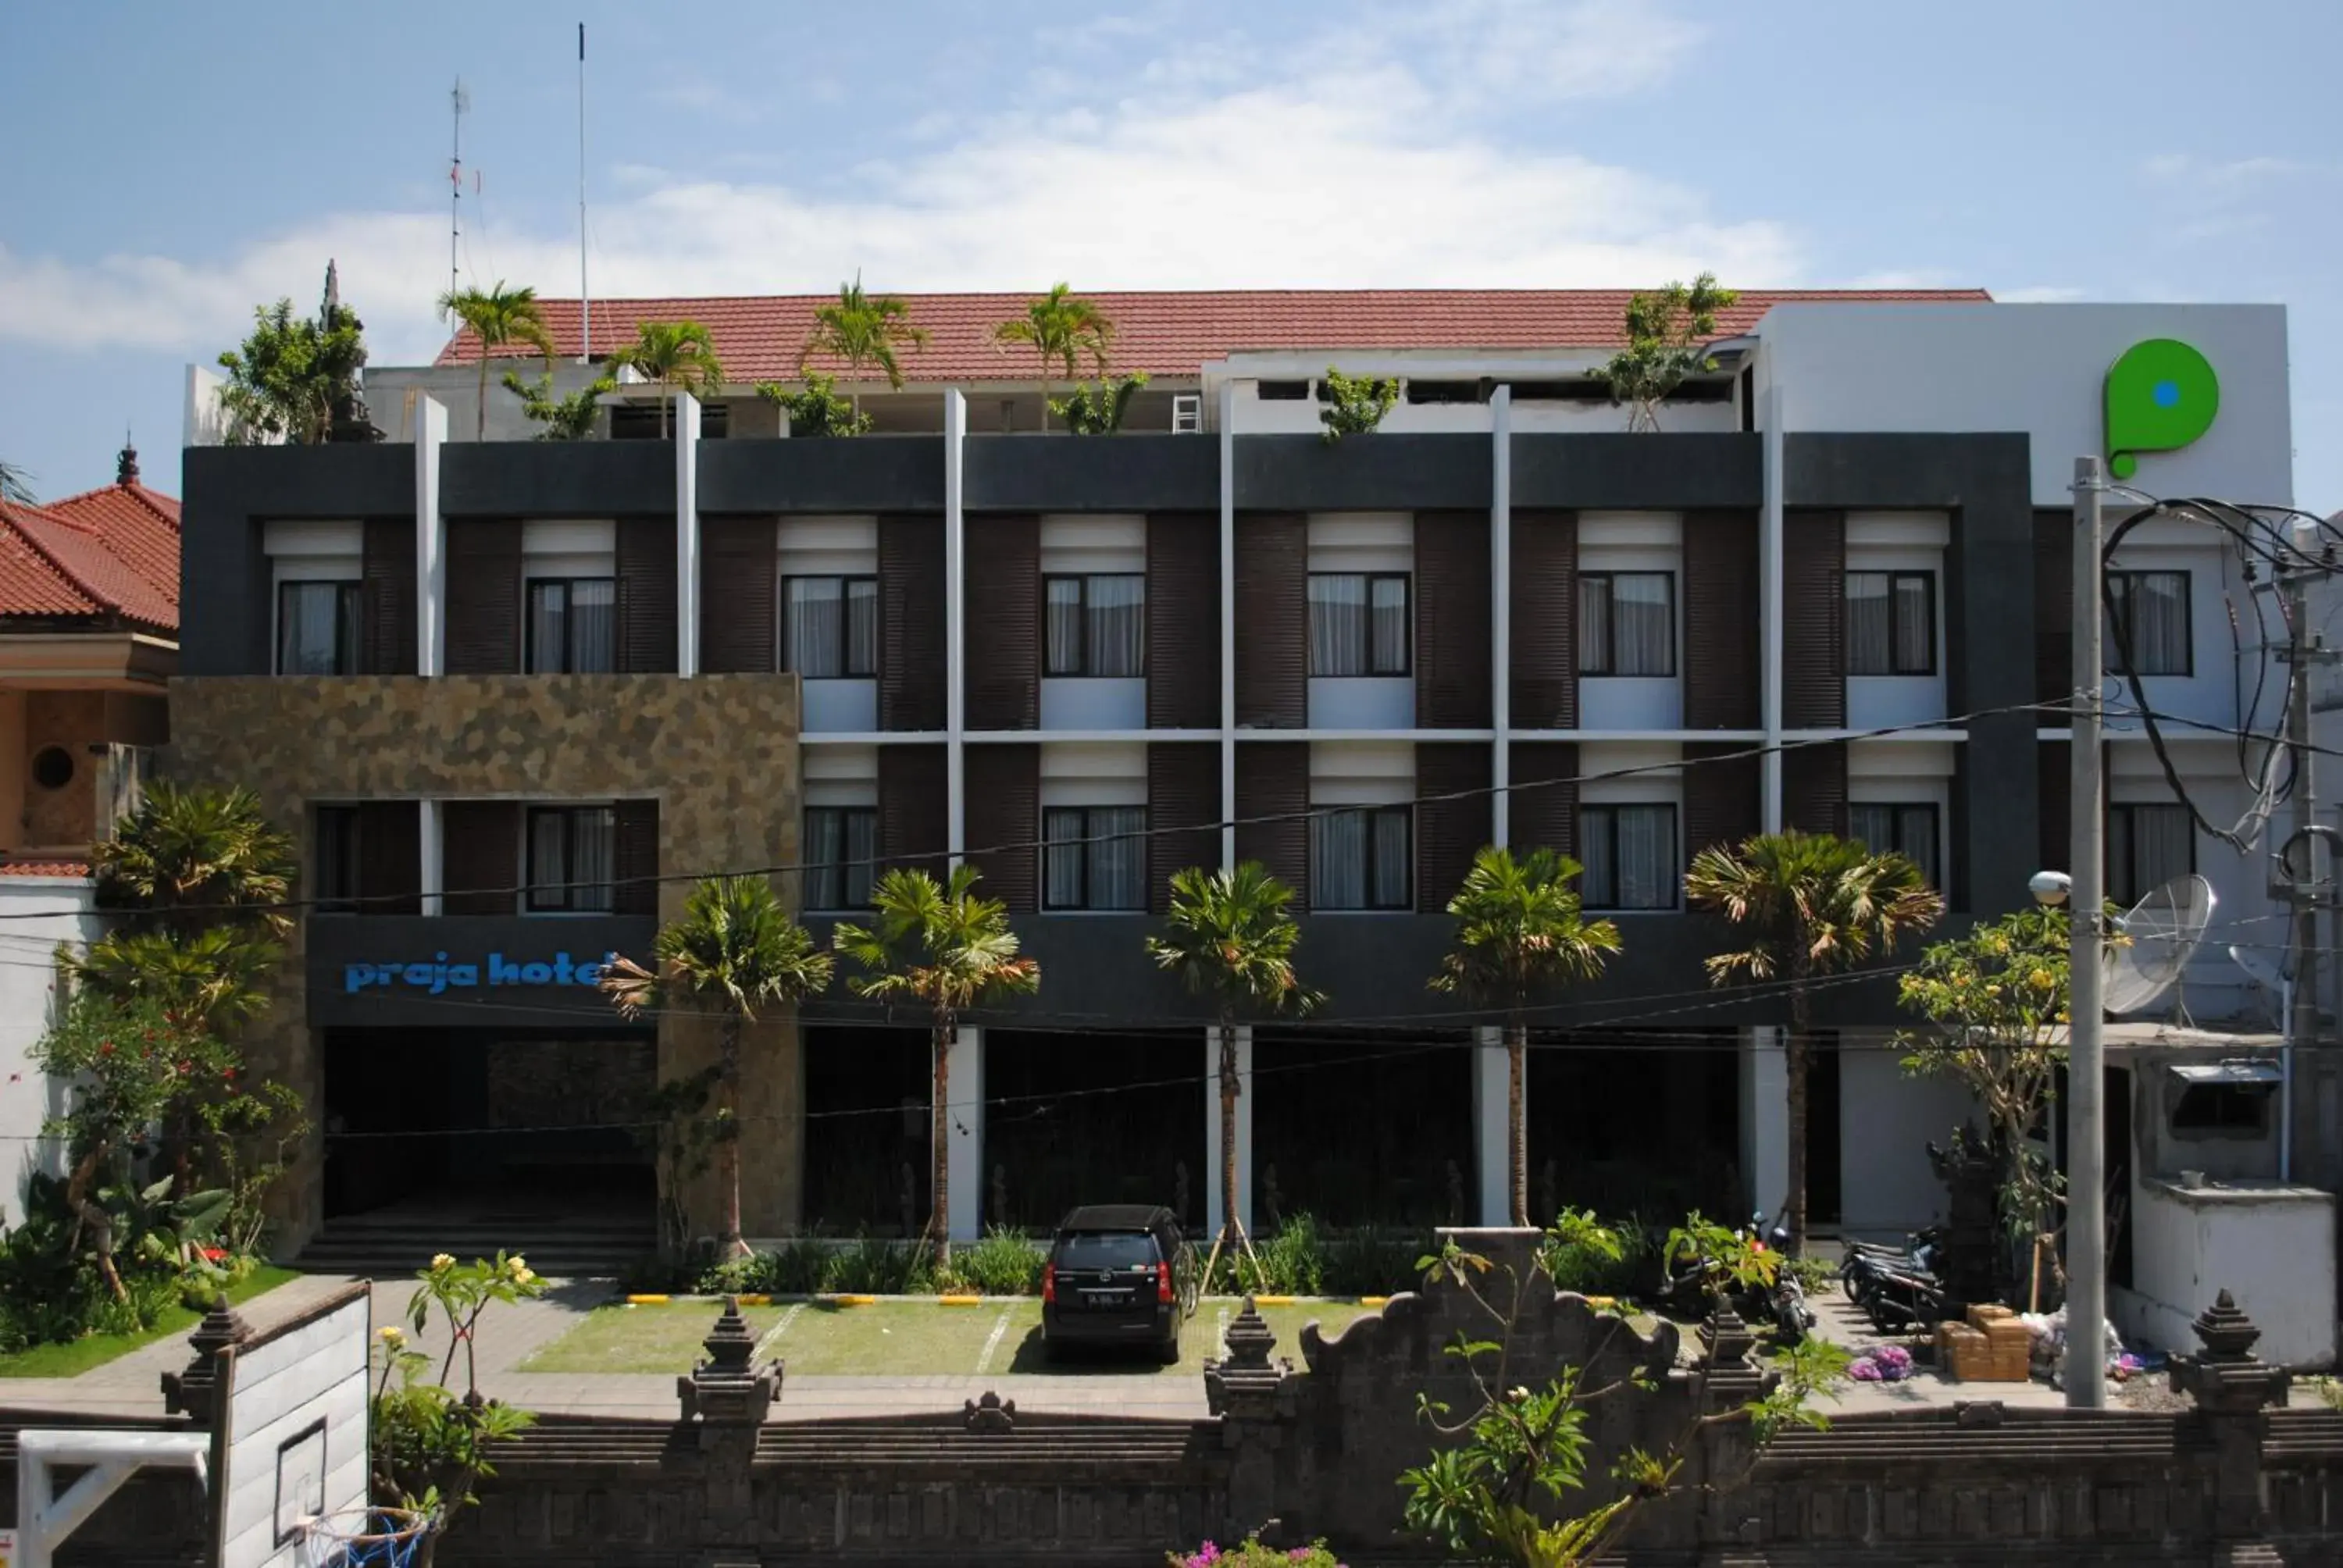 Facade/entrance, Property Building in Praja Hotel